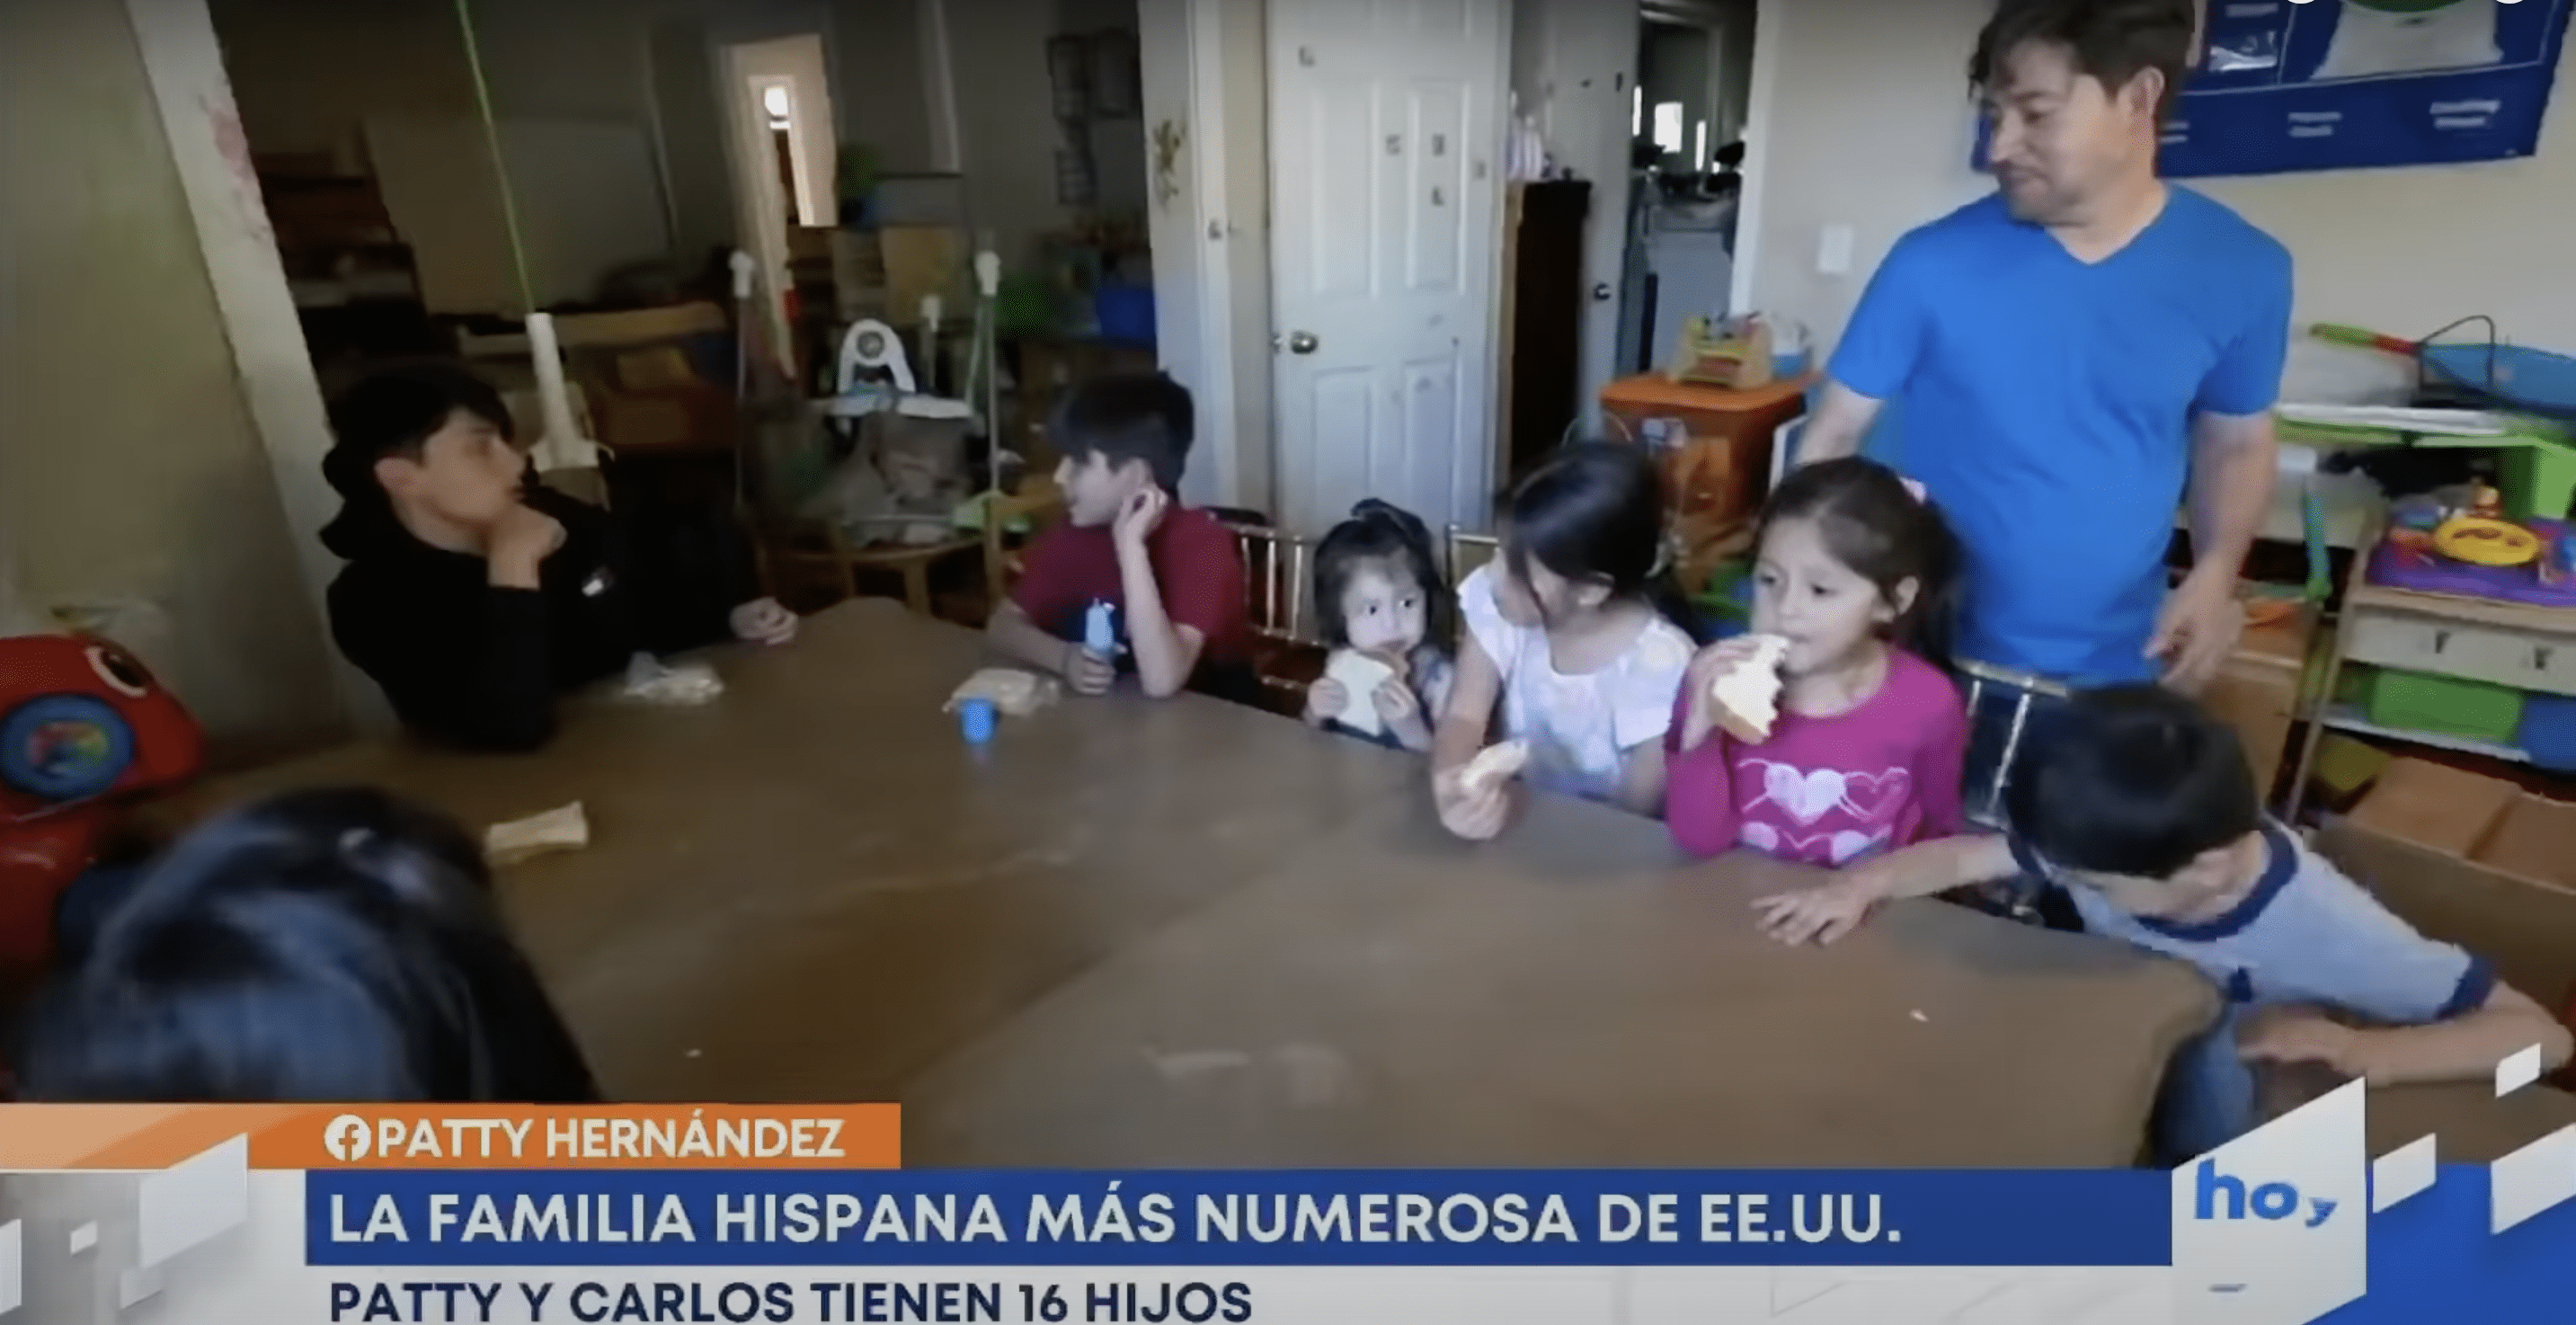 Carlos Hernandez est photographié avec quelques-uns de ses enfants. | Source : YouTube.com/hoy Día